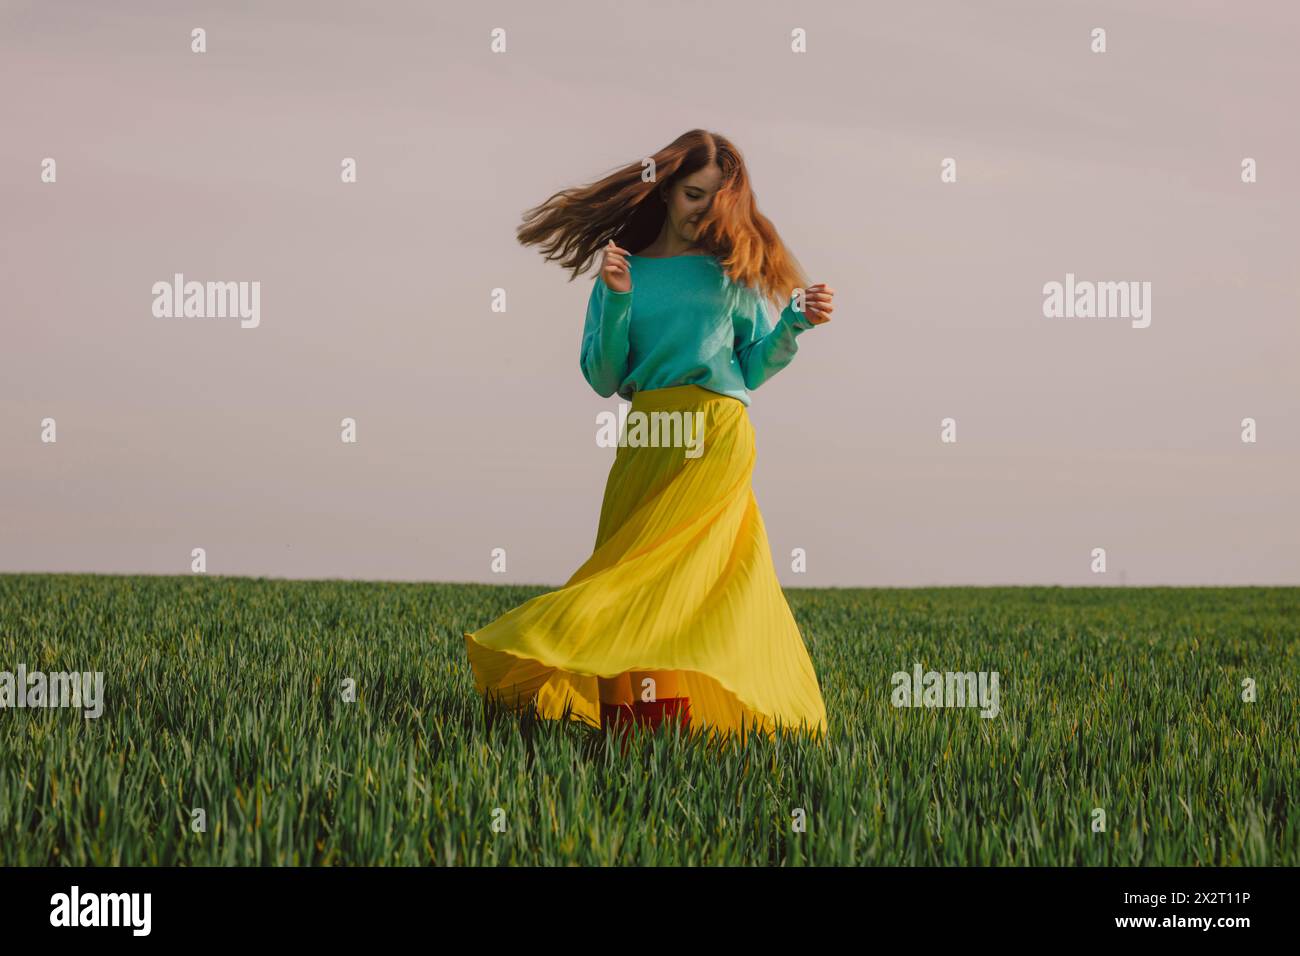 Glückliche Frau, die einen gelben Rock trägt und sich im grünen Weizenfeld dreht Stockfoto